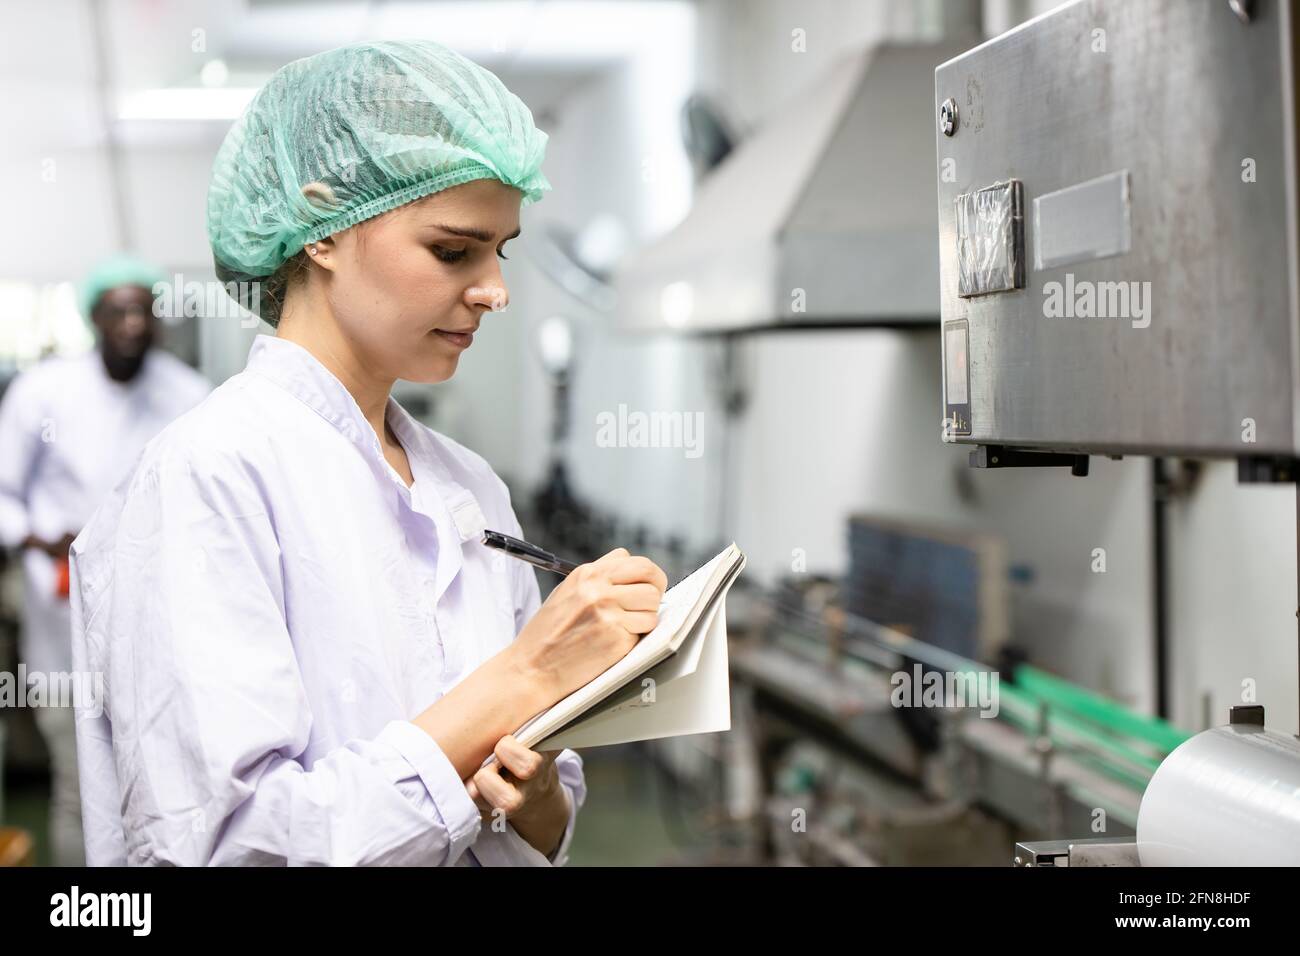 Controllo di qualità e sicurezza alimentare le donne caucasiche lavorano il personale ispezionano lo standard di prodotto nella linea di produzione della fabbrica di alimenti e bevande. Foto Stock